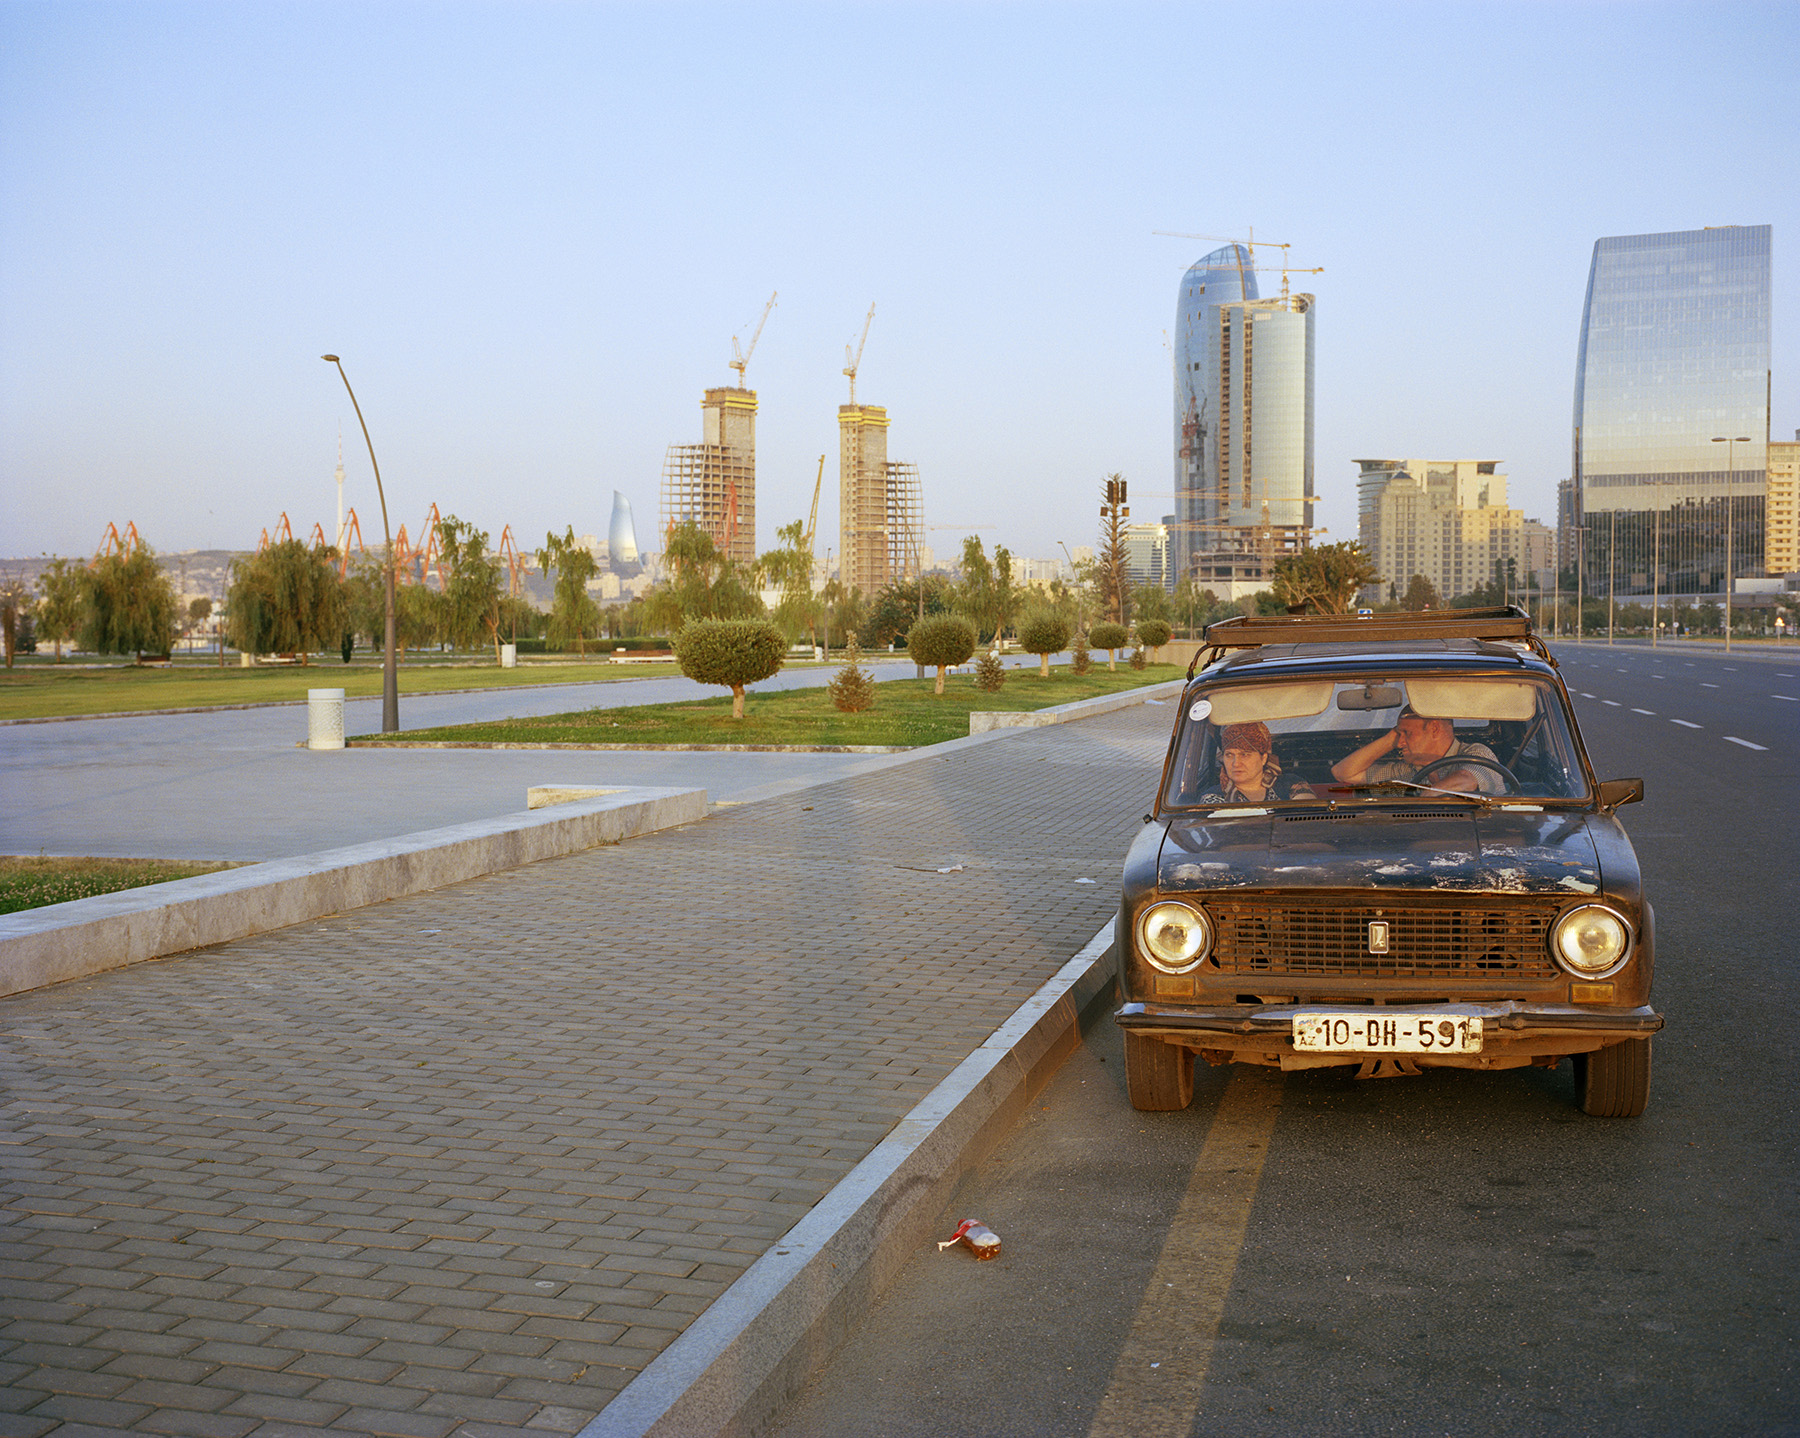 2016 год: Пара в старой «Ладе», а за ними порт Баку — зона роскошных магазинов; расположен в непосредственной близости от «Белого города» — элитного жилого комплекса. Цены на жилье в этом районе недоступны для большинства бакинцев.